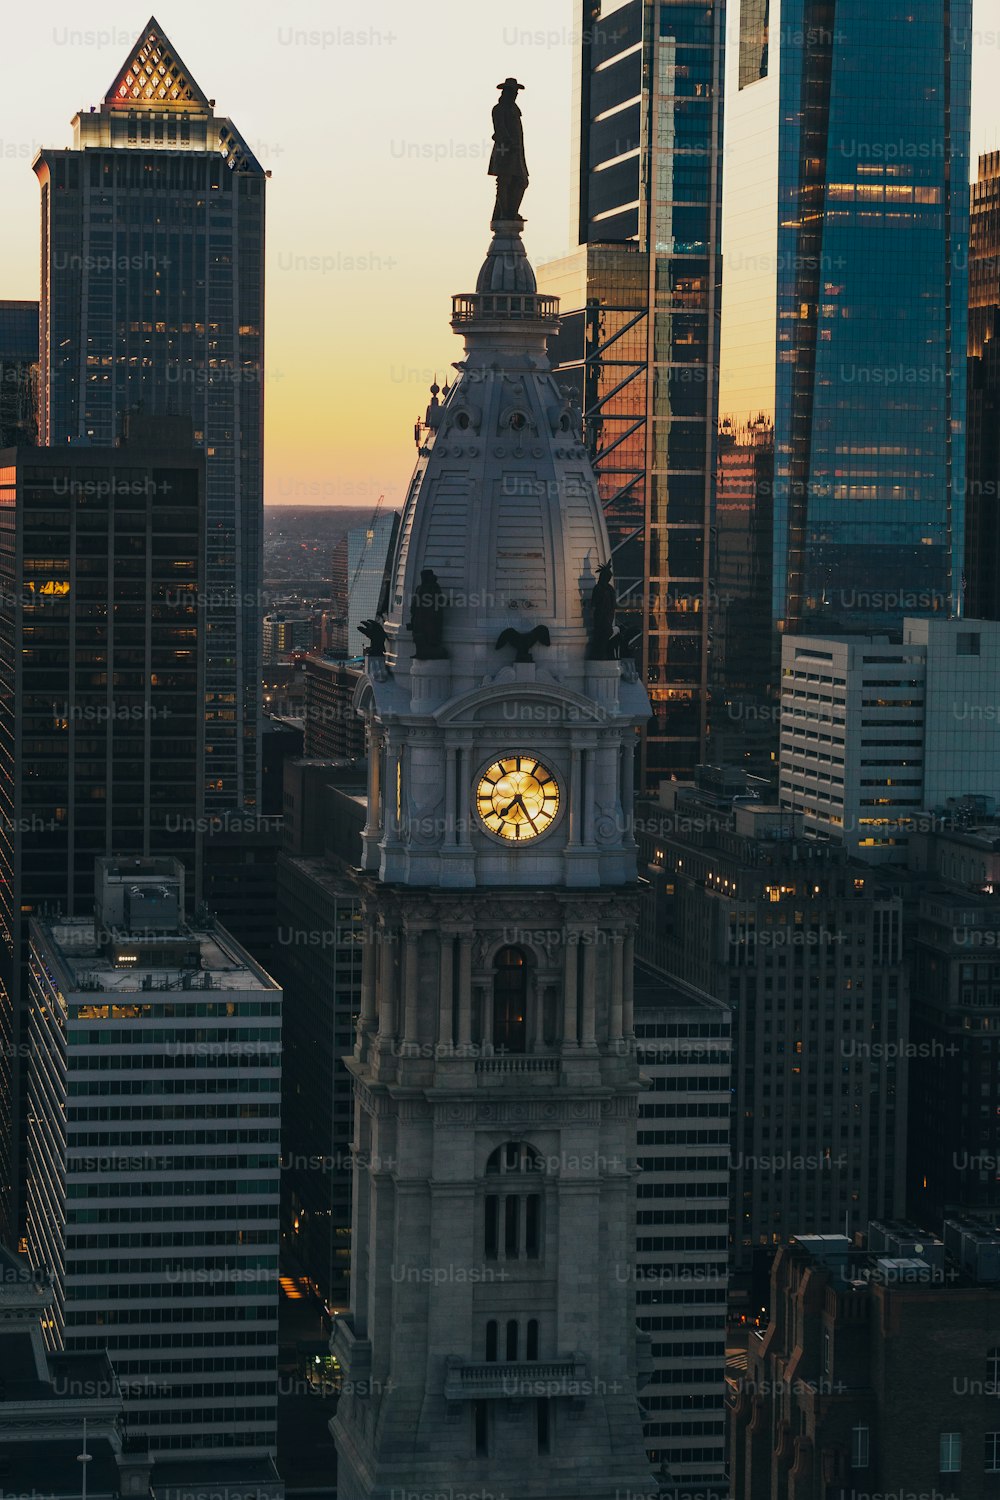 Un reloj en una torre en una ciudad